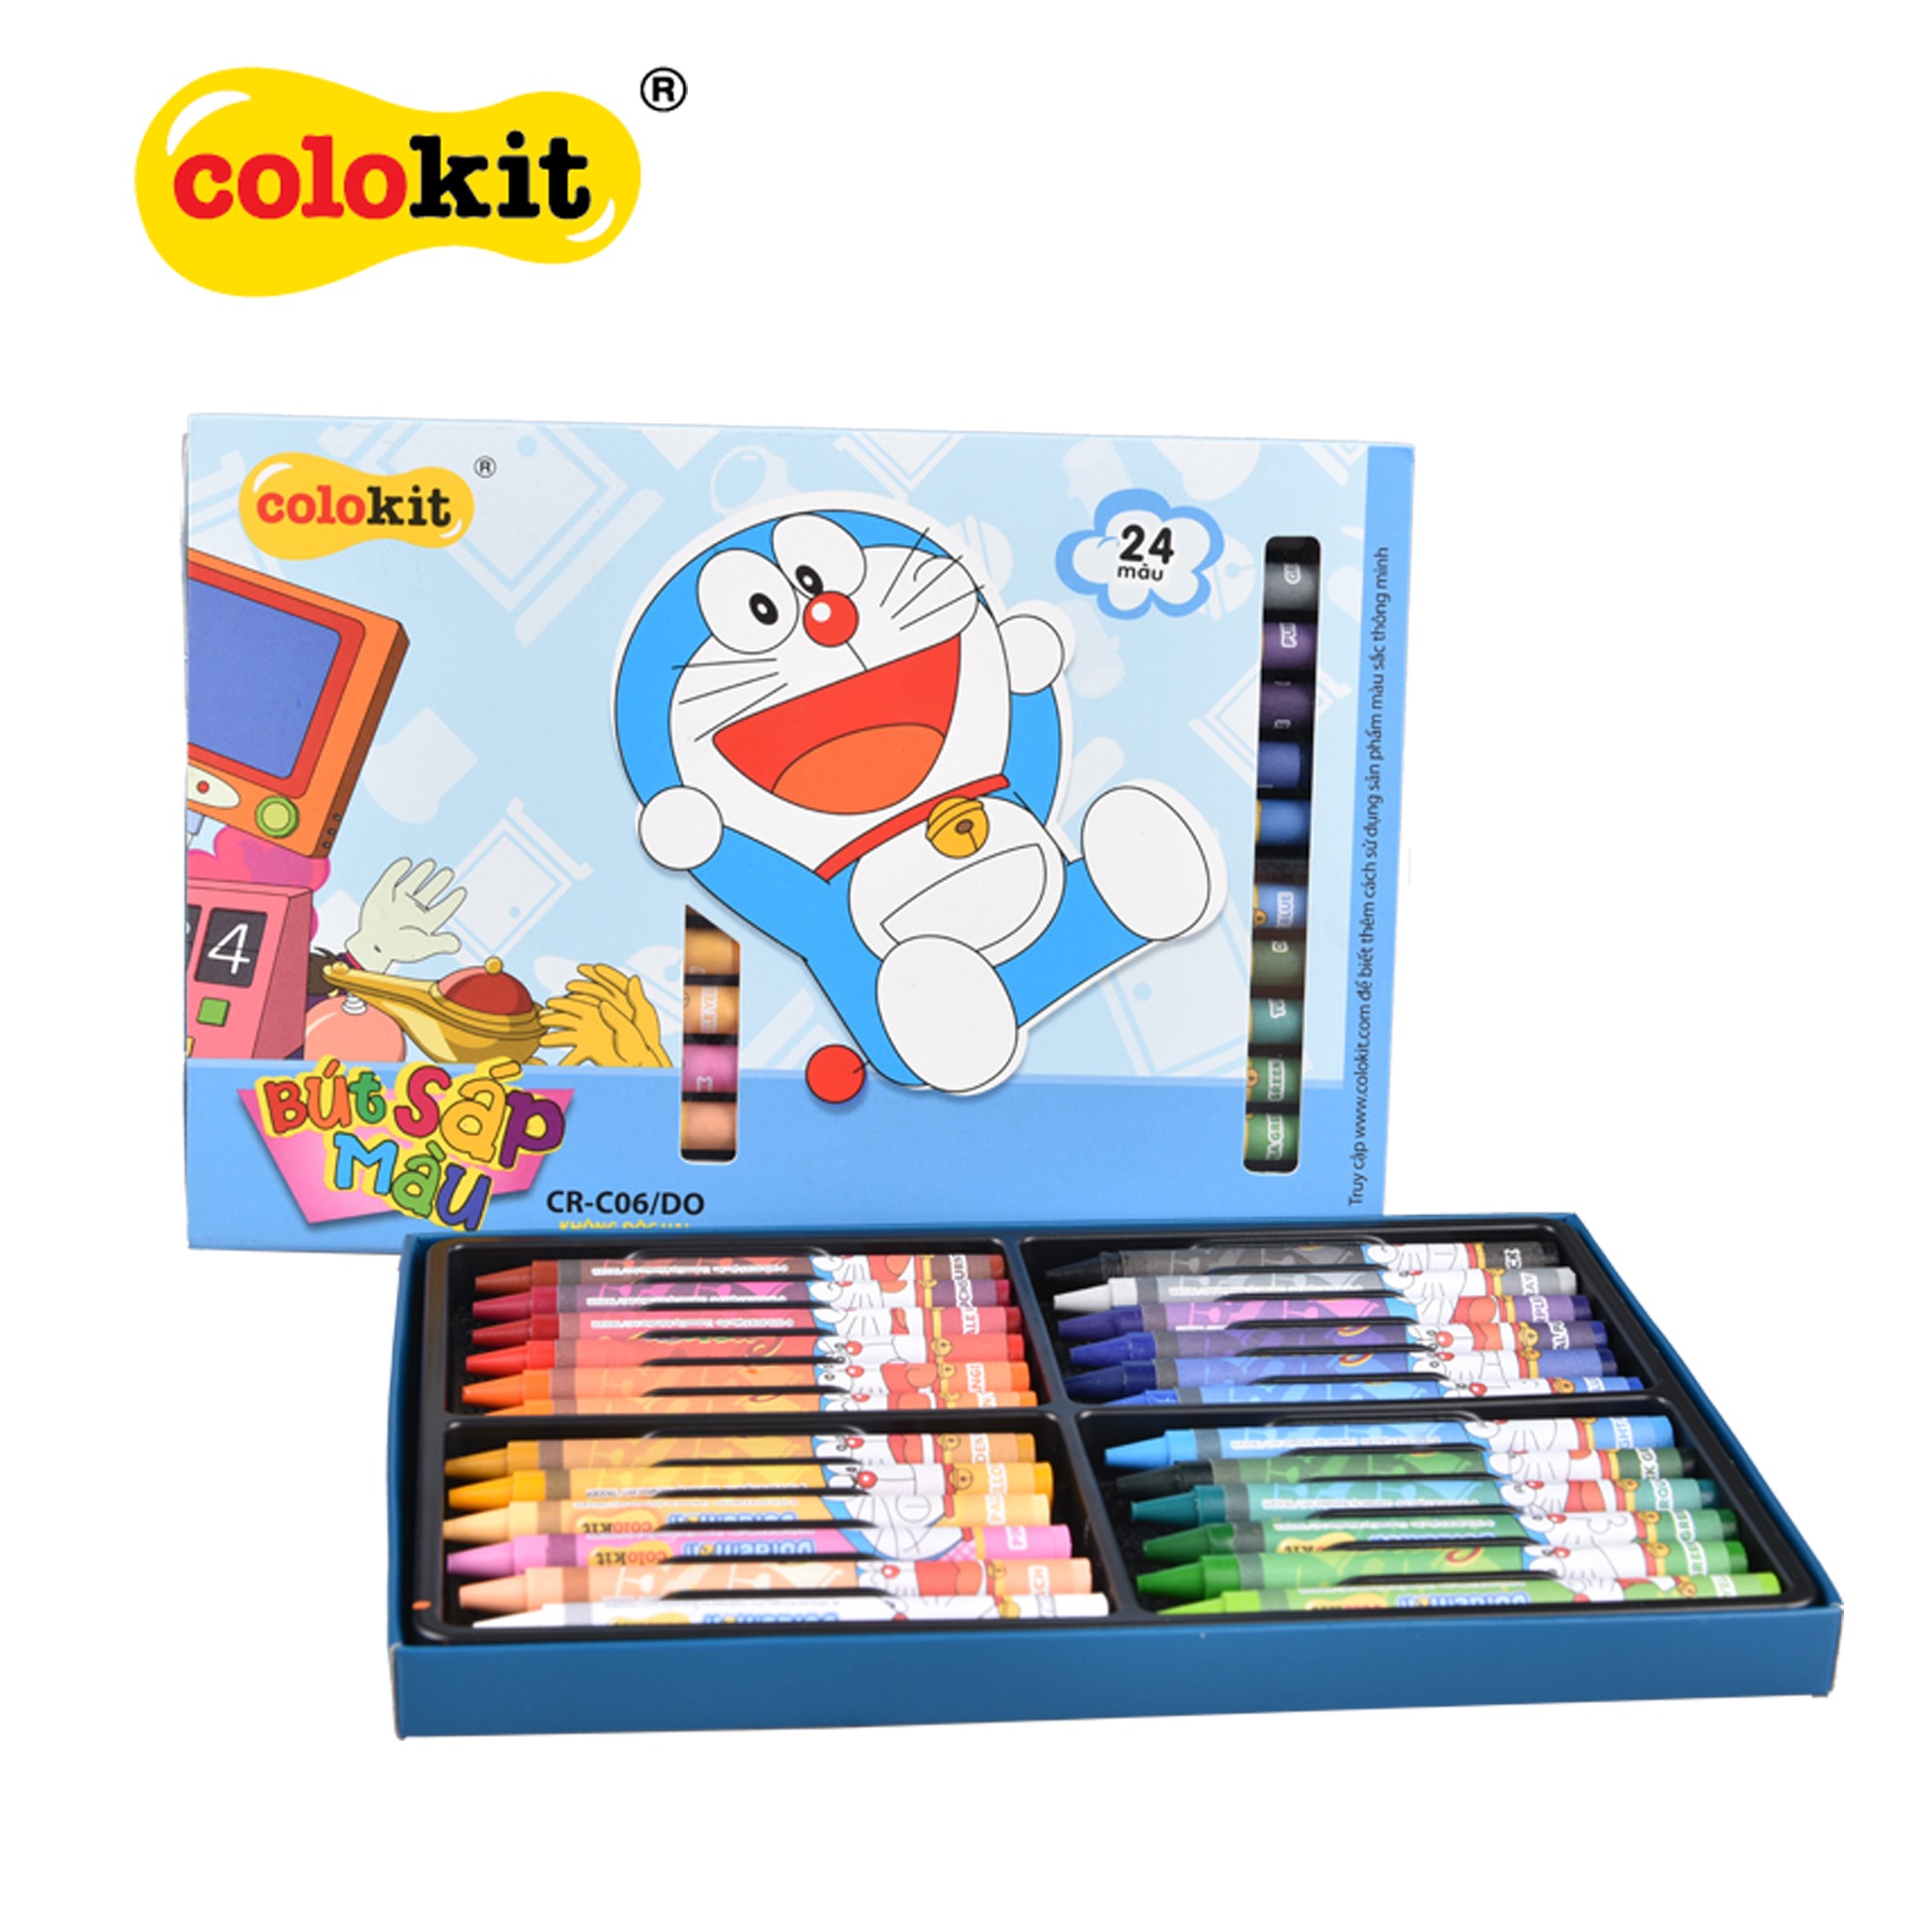 Bút Sáp màu Thiên Long Doraemon CR-C06/DO - 24 màu